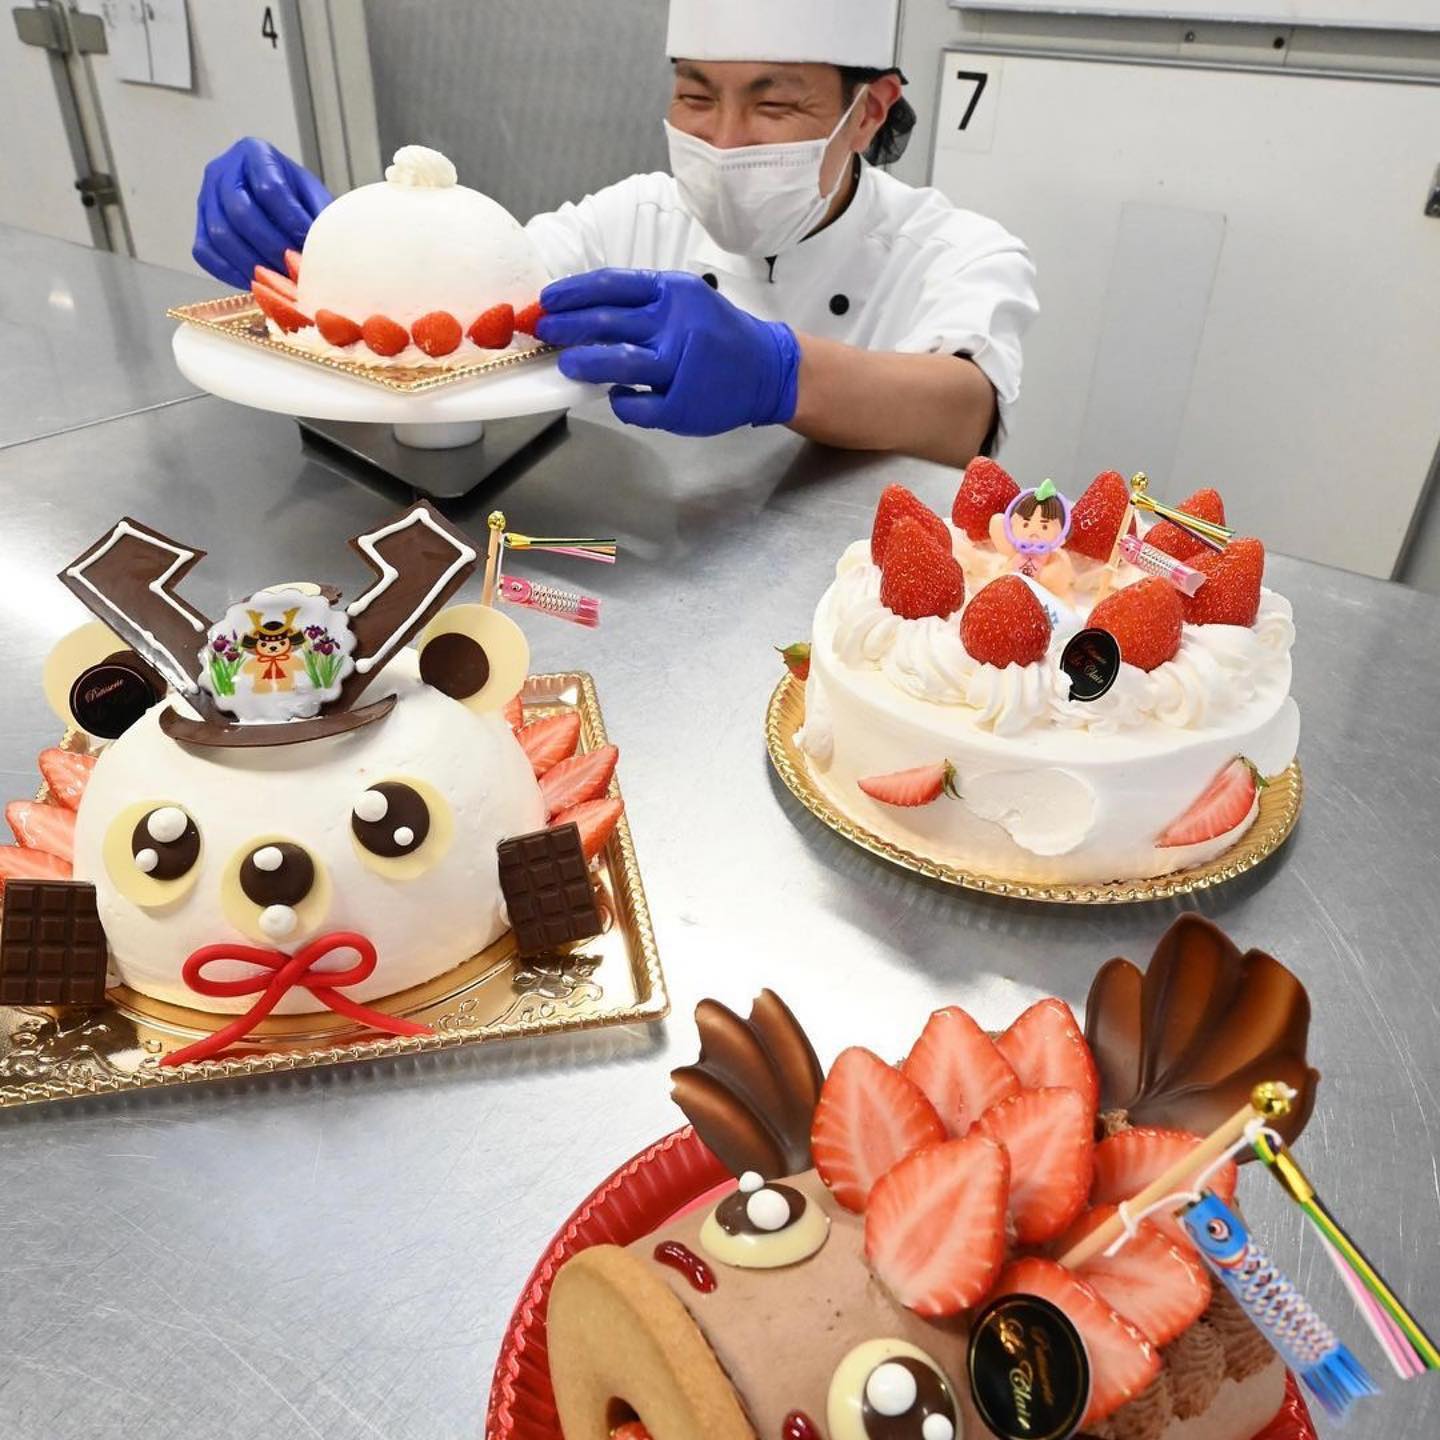 repostさせて頂きます️

先日、ル・クレールの子どもの日限定デコレーションケーキを上毛新聞様に取材して頂きました
ありがとうございます‍♂️
@jomo_shinbun with @make_repost
・・・
【こどもの日ケーキを販売5日まで太田の洋菓子店】

子どもたちの健やかな成長を願い、群馬県太田市由良町の洋菓子店「ル・クレール」は5月5日の「こどもの日」に合わせ、こいのぼりやかぶとを模したケーキを作り販売している。
5日まで限定販売。

★詳しくは3日の上毛新聞★ウェブ版はプロフィール欄URLから。ページ右上の「検索」項目に『こどもの日』と入れてクリック！動画も見られます

◆◆◆写真募集中です📸◆◆◆

上毛新聞はインスタグラムを通じて、フォロワーの皆様から折々の の を募ります。

初回のテーマは #グンマーの春 。

皆様が で撮影した、 らしい一枚をぜひ投稿してください！

「満開の桜」「美味しいフキノトウ」「可愛い子ヒツジ」「新緑の山々」「若葉萌える公園」…など、景色、食べ物、スポット、草花にと、なんでもOKです！昔撮った写真も可とします！

応募期間は2021年3月15日〜21年5月31日。

①@jomo_shinbun をフォローしていただき、
② #グンマーの春 と添え、投稿。
③撮影した場所と、撮影した時期を記した上で、ぜひお気軽に投稿してみてください

投稿された作品は、この上毛新聞公式インスタでご紹介させていただくほか、
紙面掲載も検討します！

(いずれもお断りなくさせていただきますのでご了承ください)

ご応募、お待ちしています！🥺
*
本日も当店にて、沢山ご用意させて頂いております️
お電話でもご予約可能で、ございますので、是非宜しくお願い致します‍♂️



@jomo_shinbun 
# 

@le_clair_1015 
@akira_sato77 

#宜しくお願いたします🤲